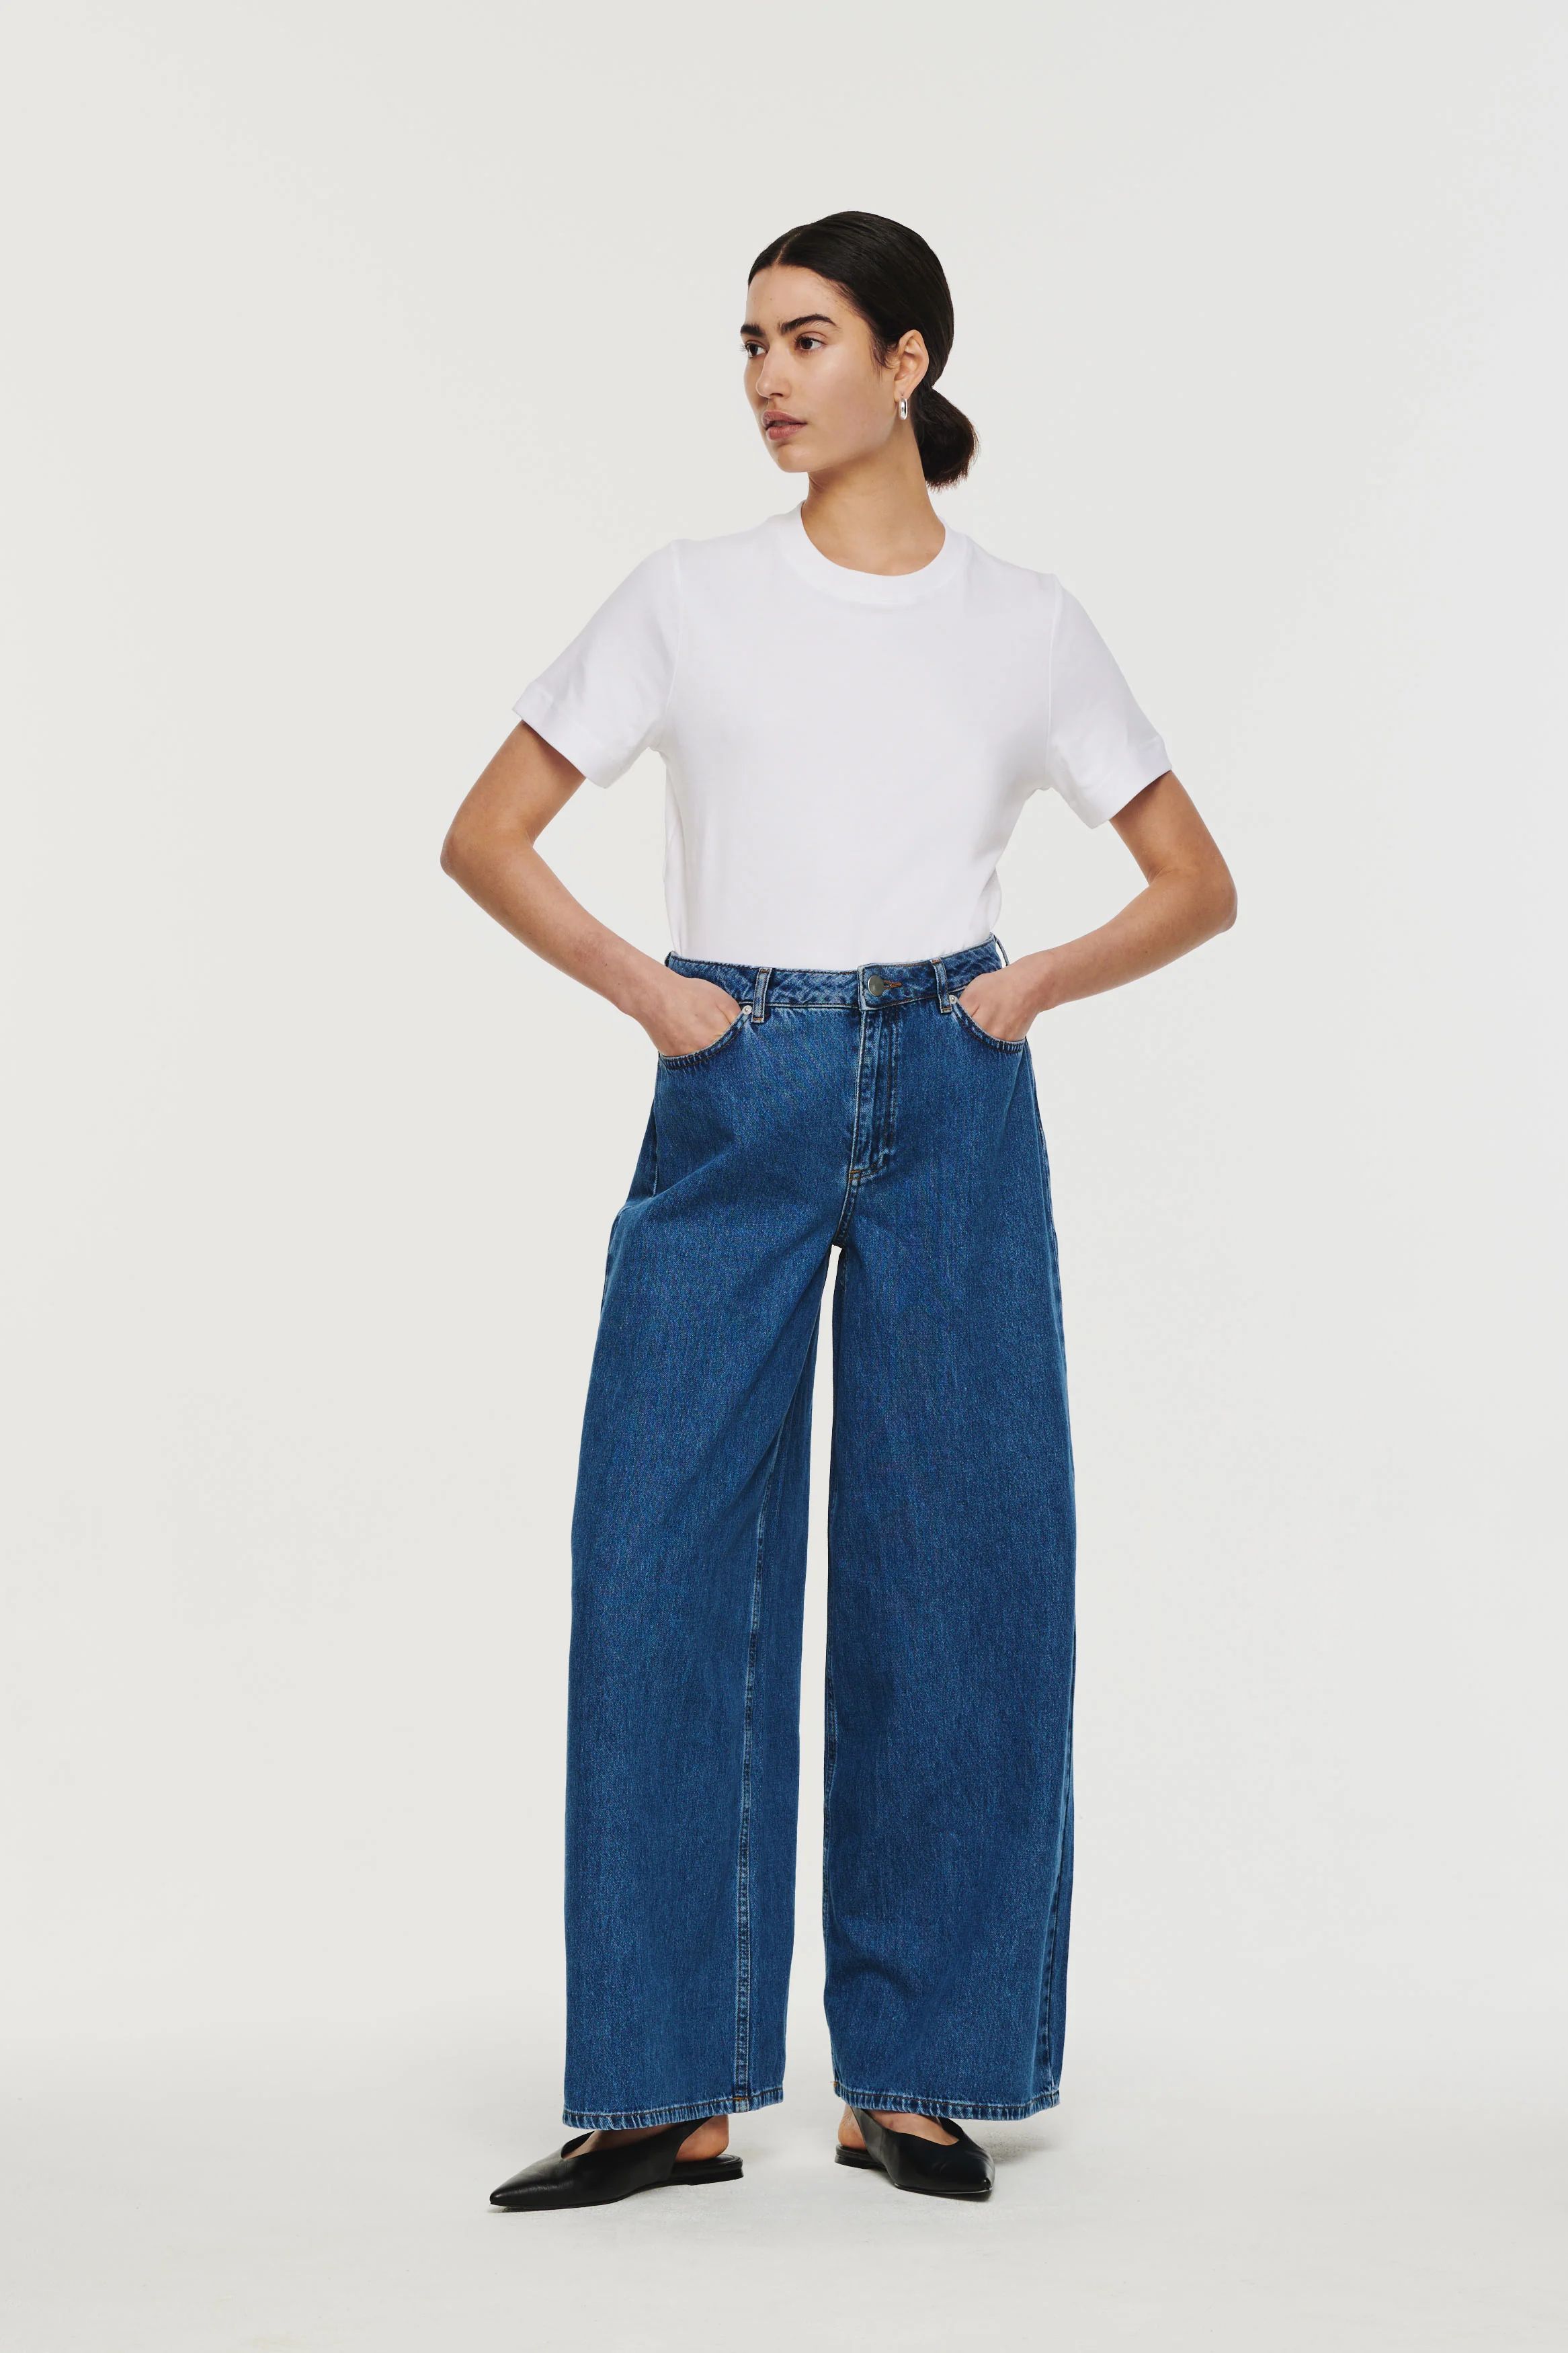 Jacinda | Wide Leg Jeans in Mid Wash | ALIGNE | Aligne UK